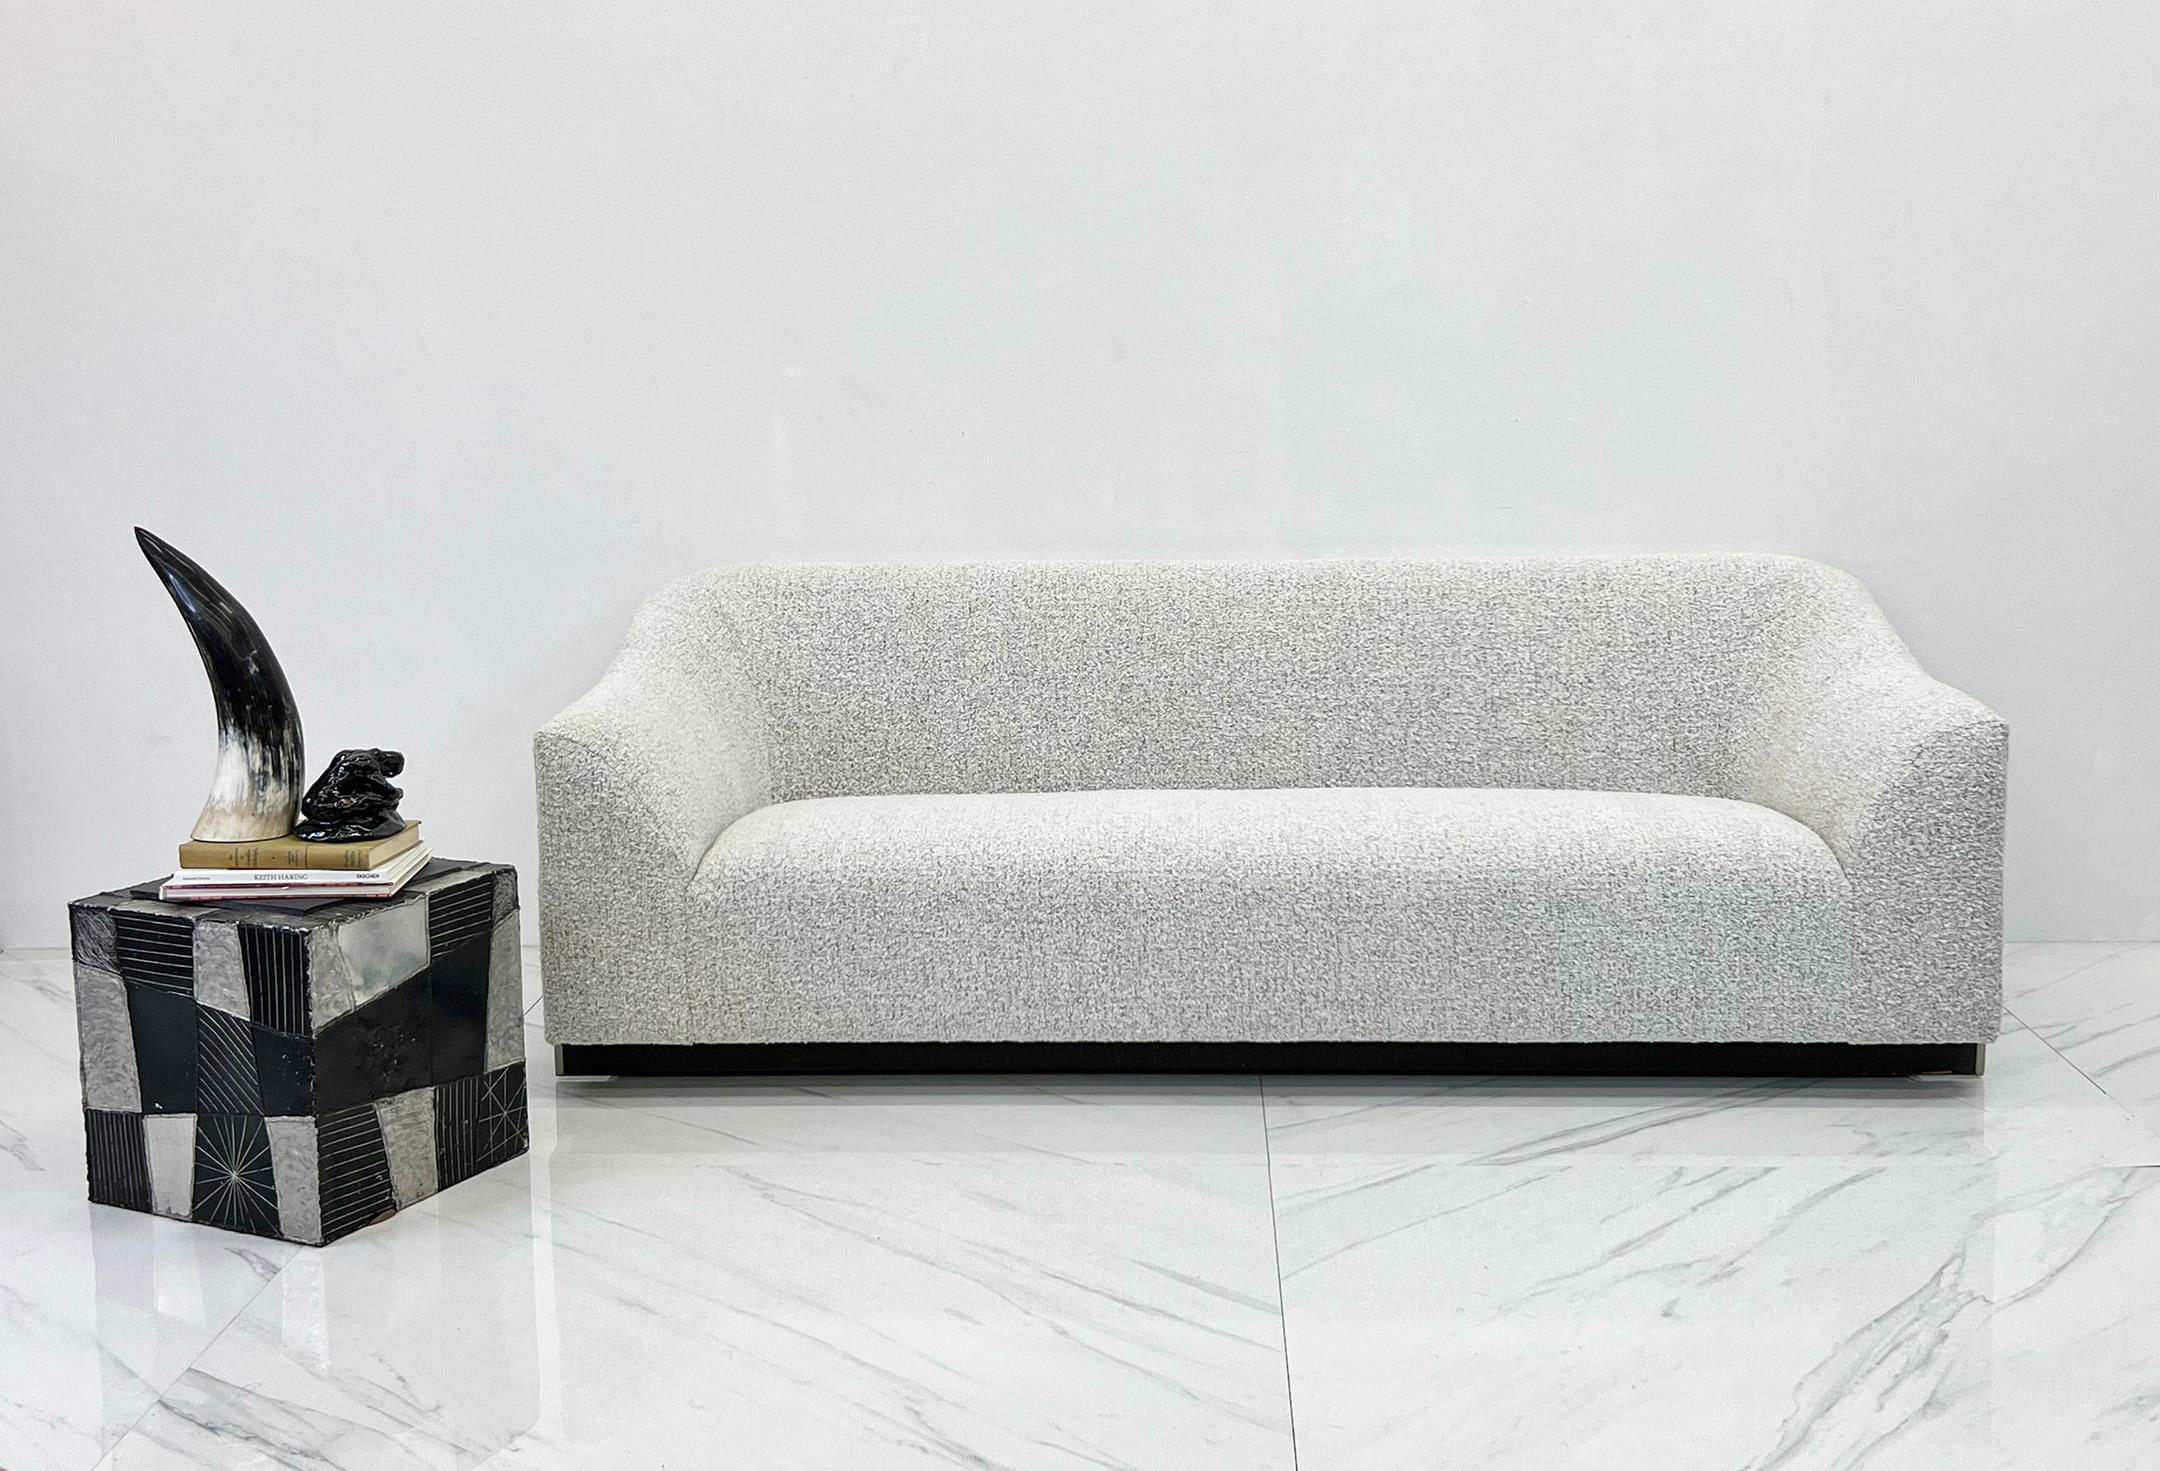 Dieses Snowdonia-Sofa von Eric Jourdan für Ligne Roset mit zweifarbiger schwarzer Naht und weißem Boucle ist ein atemberaubendes modernes Möbelstück, das jedem zeitgenössischen Wohnbereich einen Hauch von Raffinesse und Eleganz verleiht.

Das